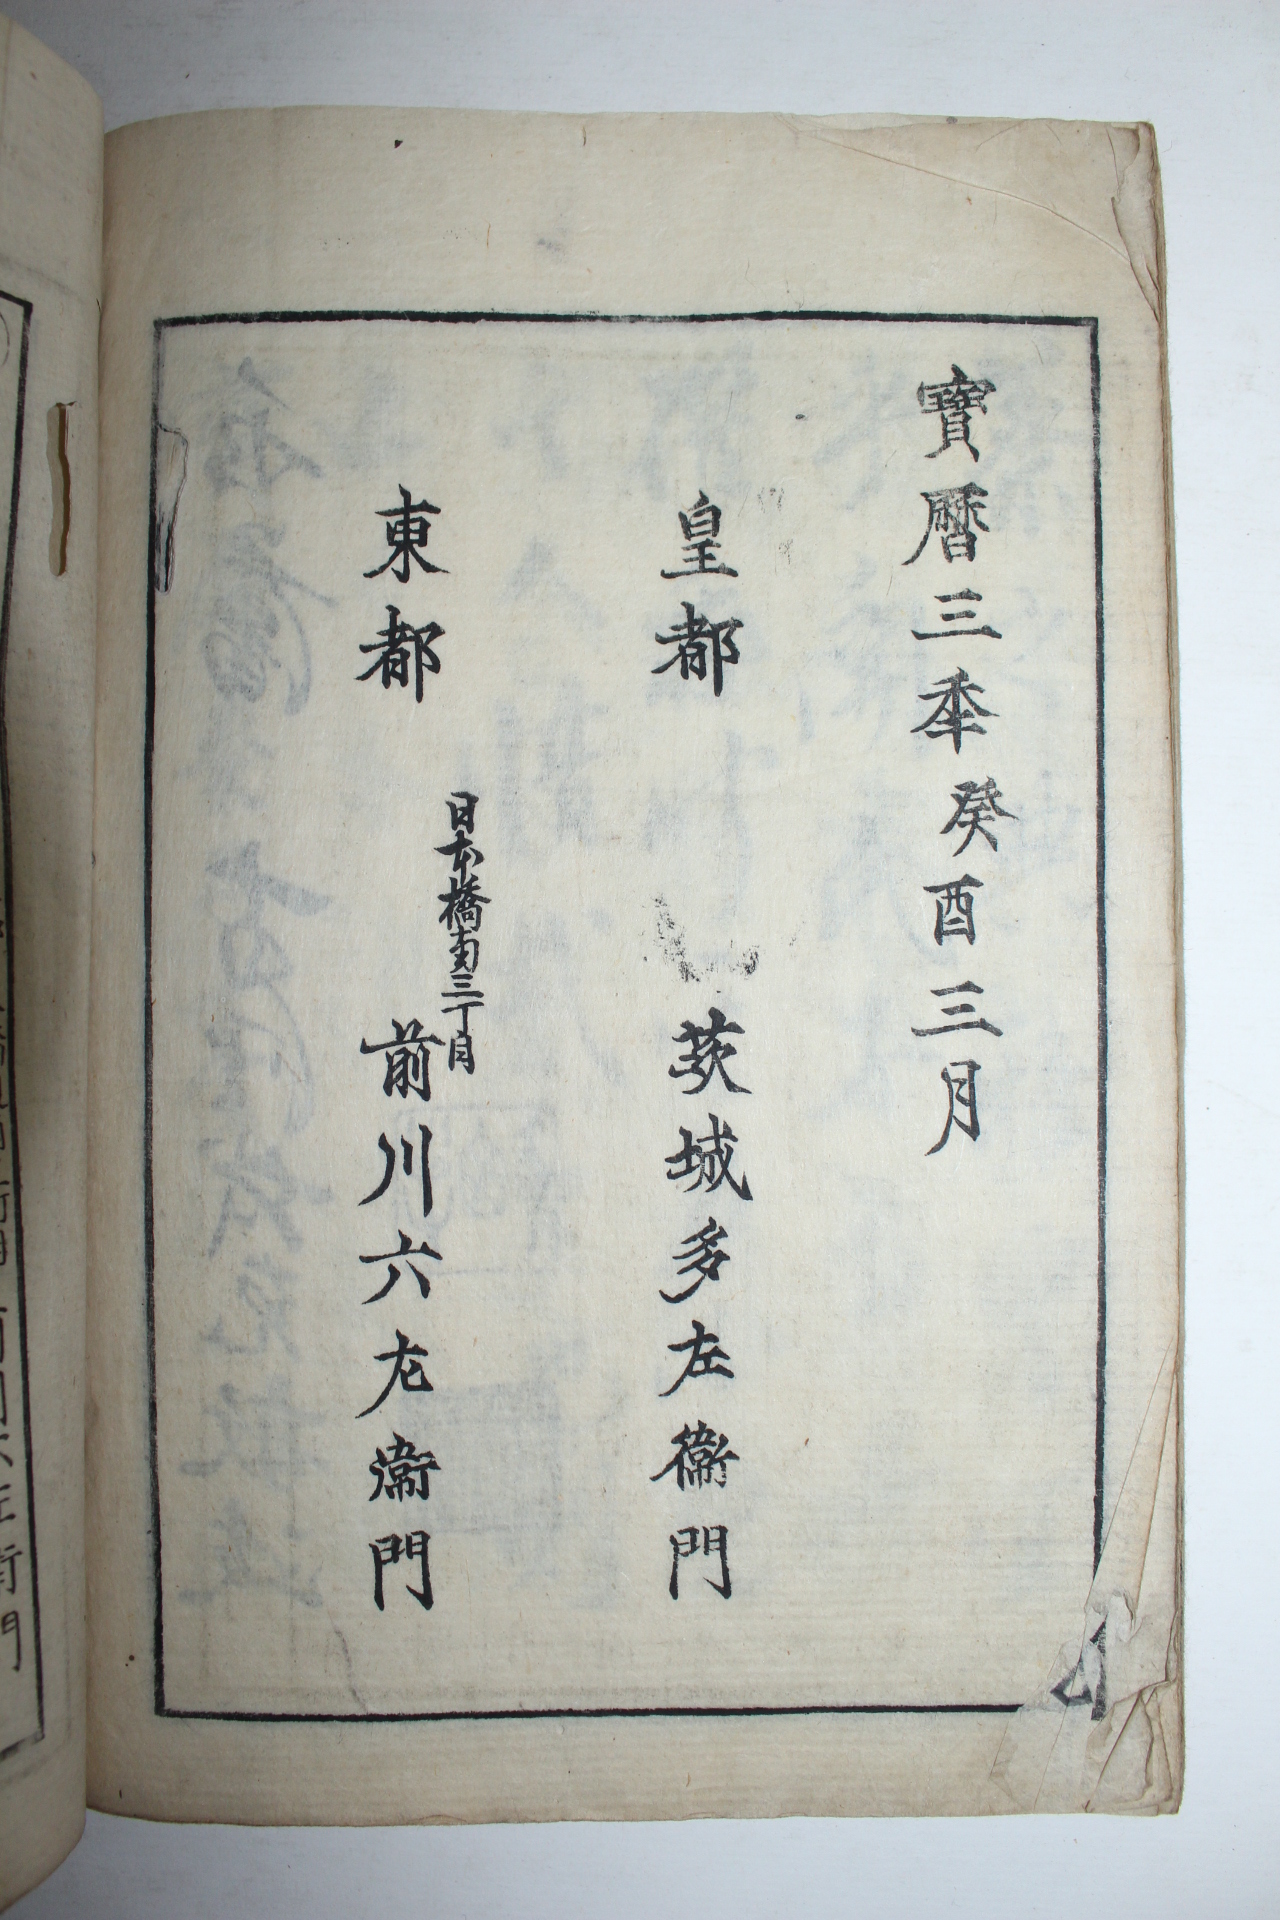 1753년(寶曆3年) 일본목판본 전서당시선오언절구(篆書唐詩選五言絶句) 1책완질